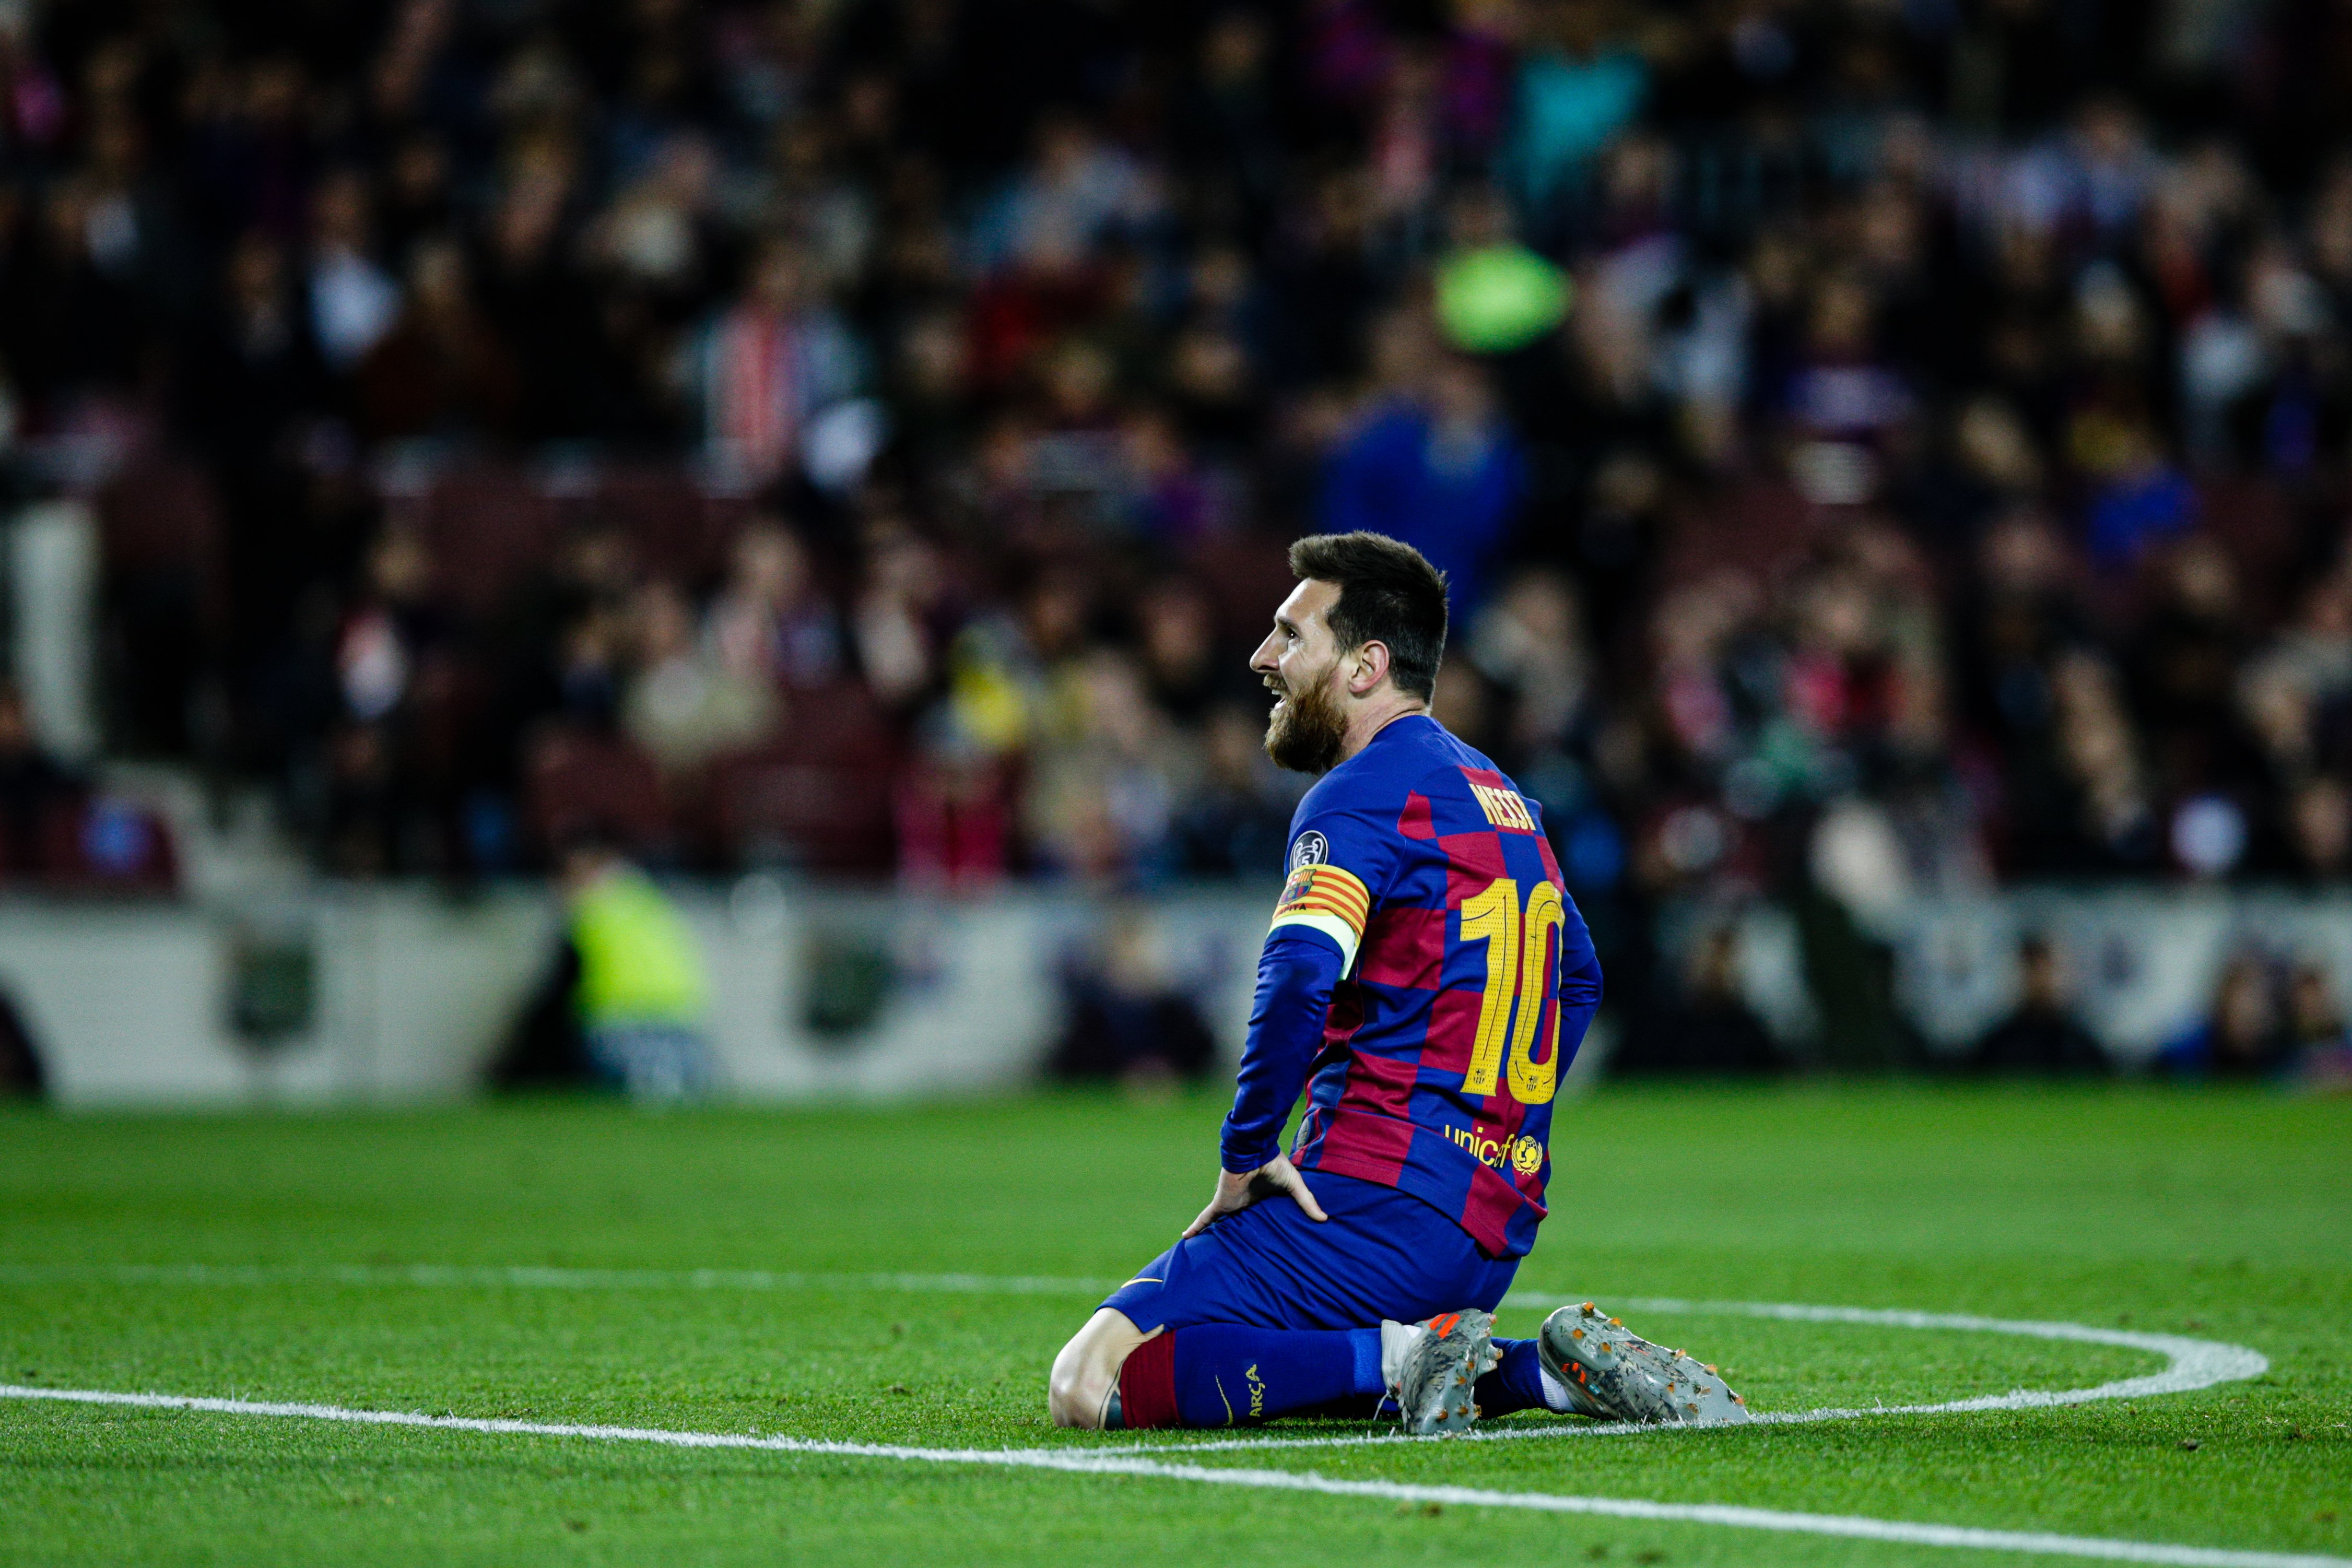 El Barça perpetra el peor arranque desde el primer año de Messi